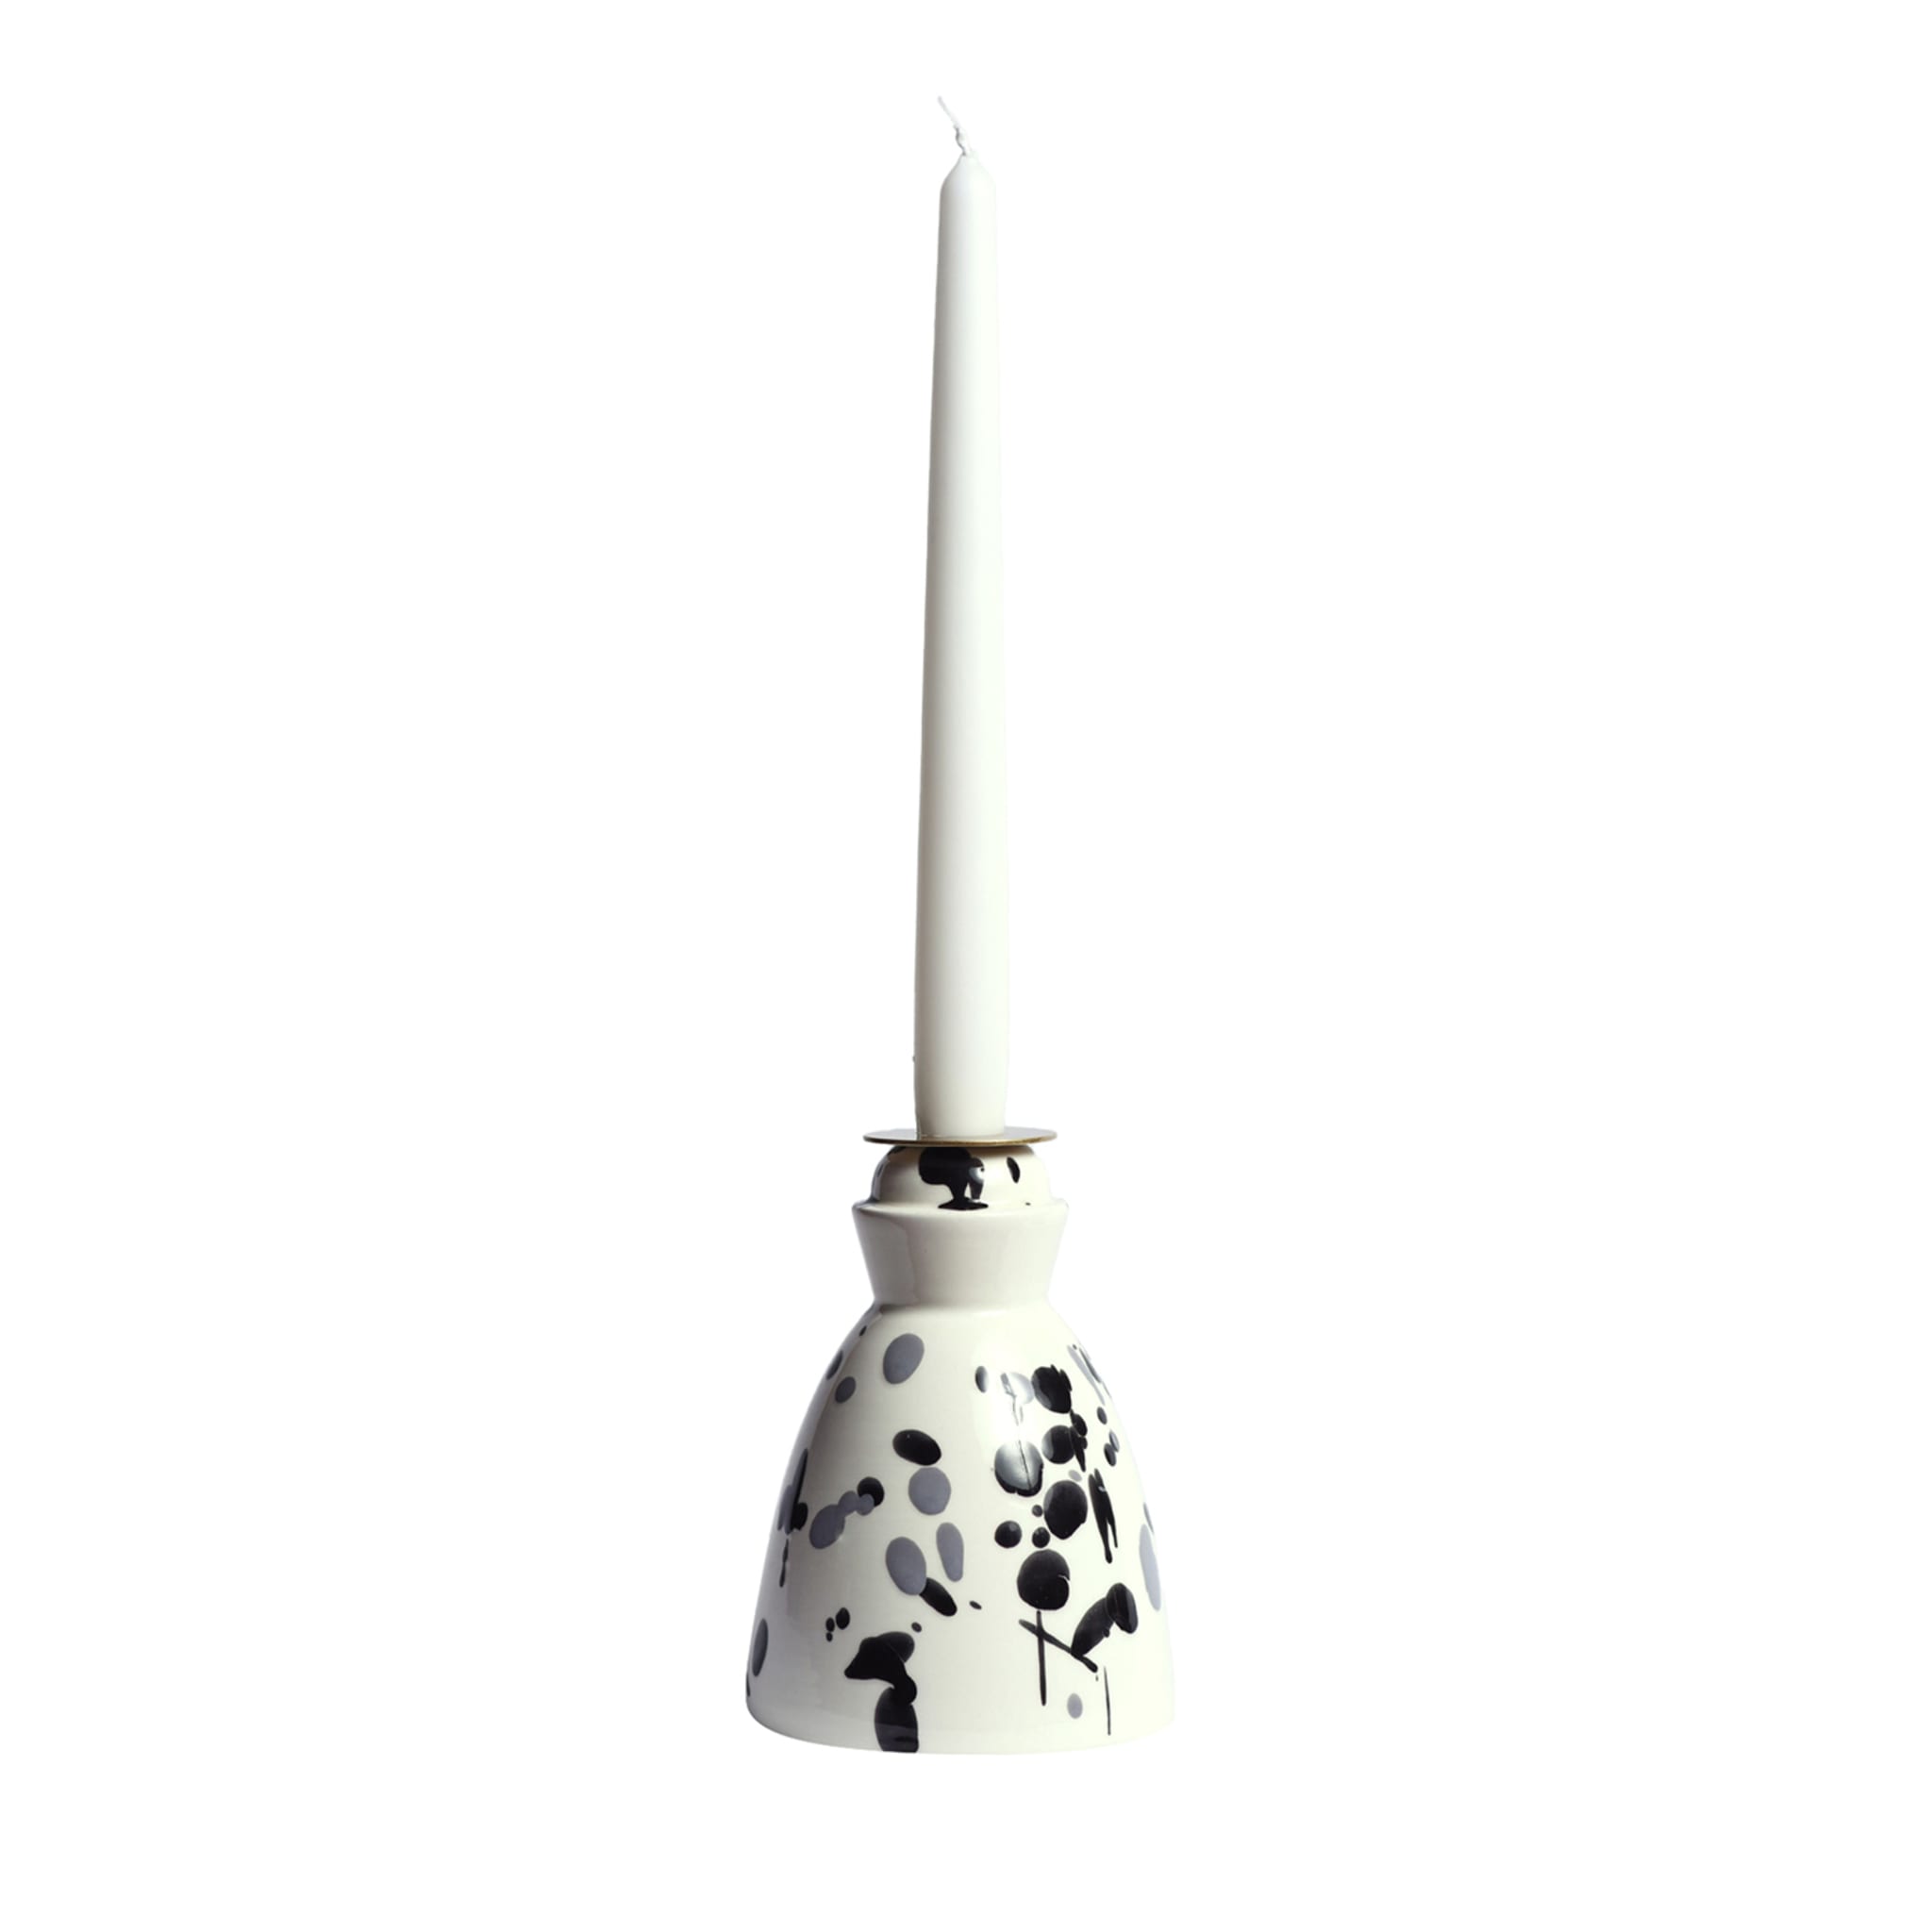 Candeliere in ceramica bianco e nero con 4 candele profumate - Vista principale